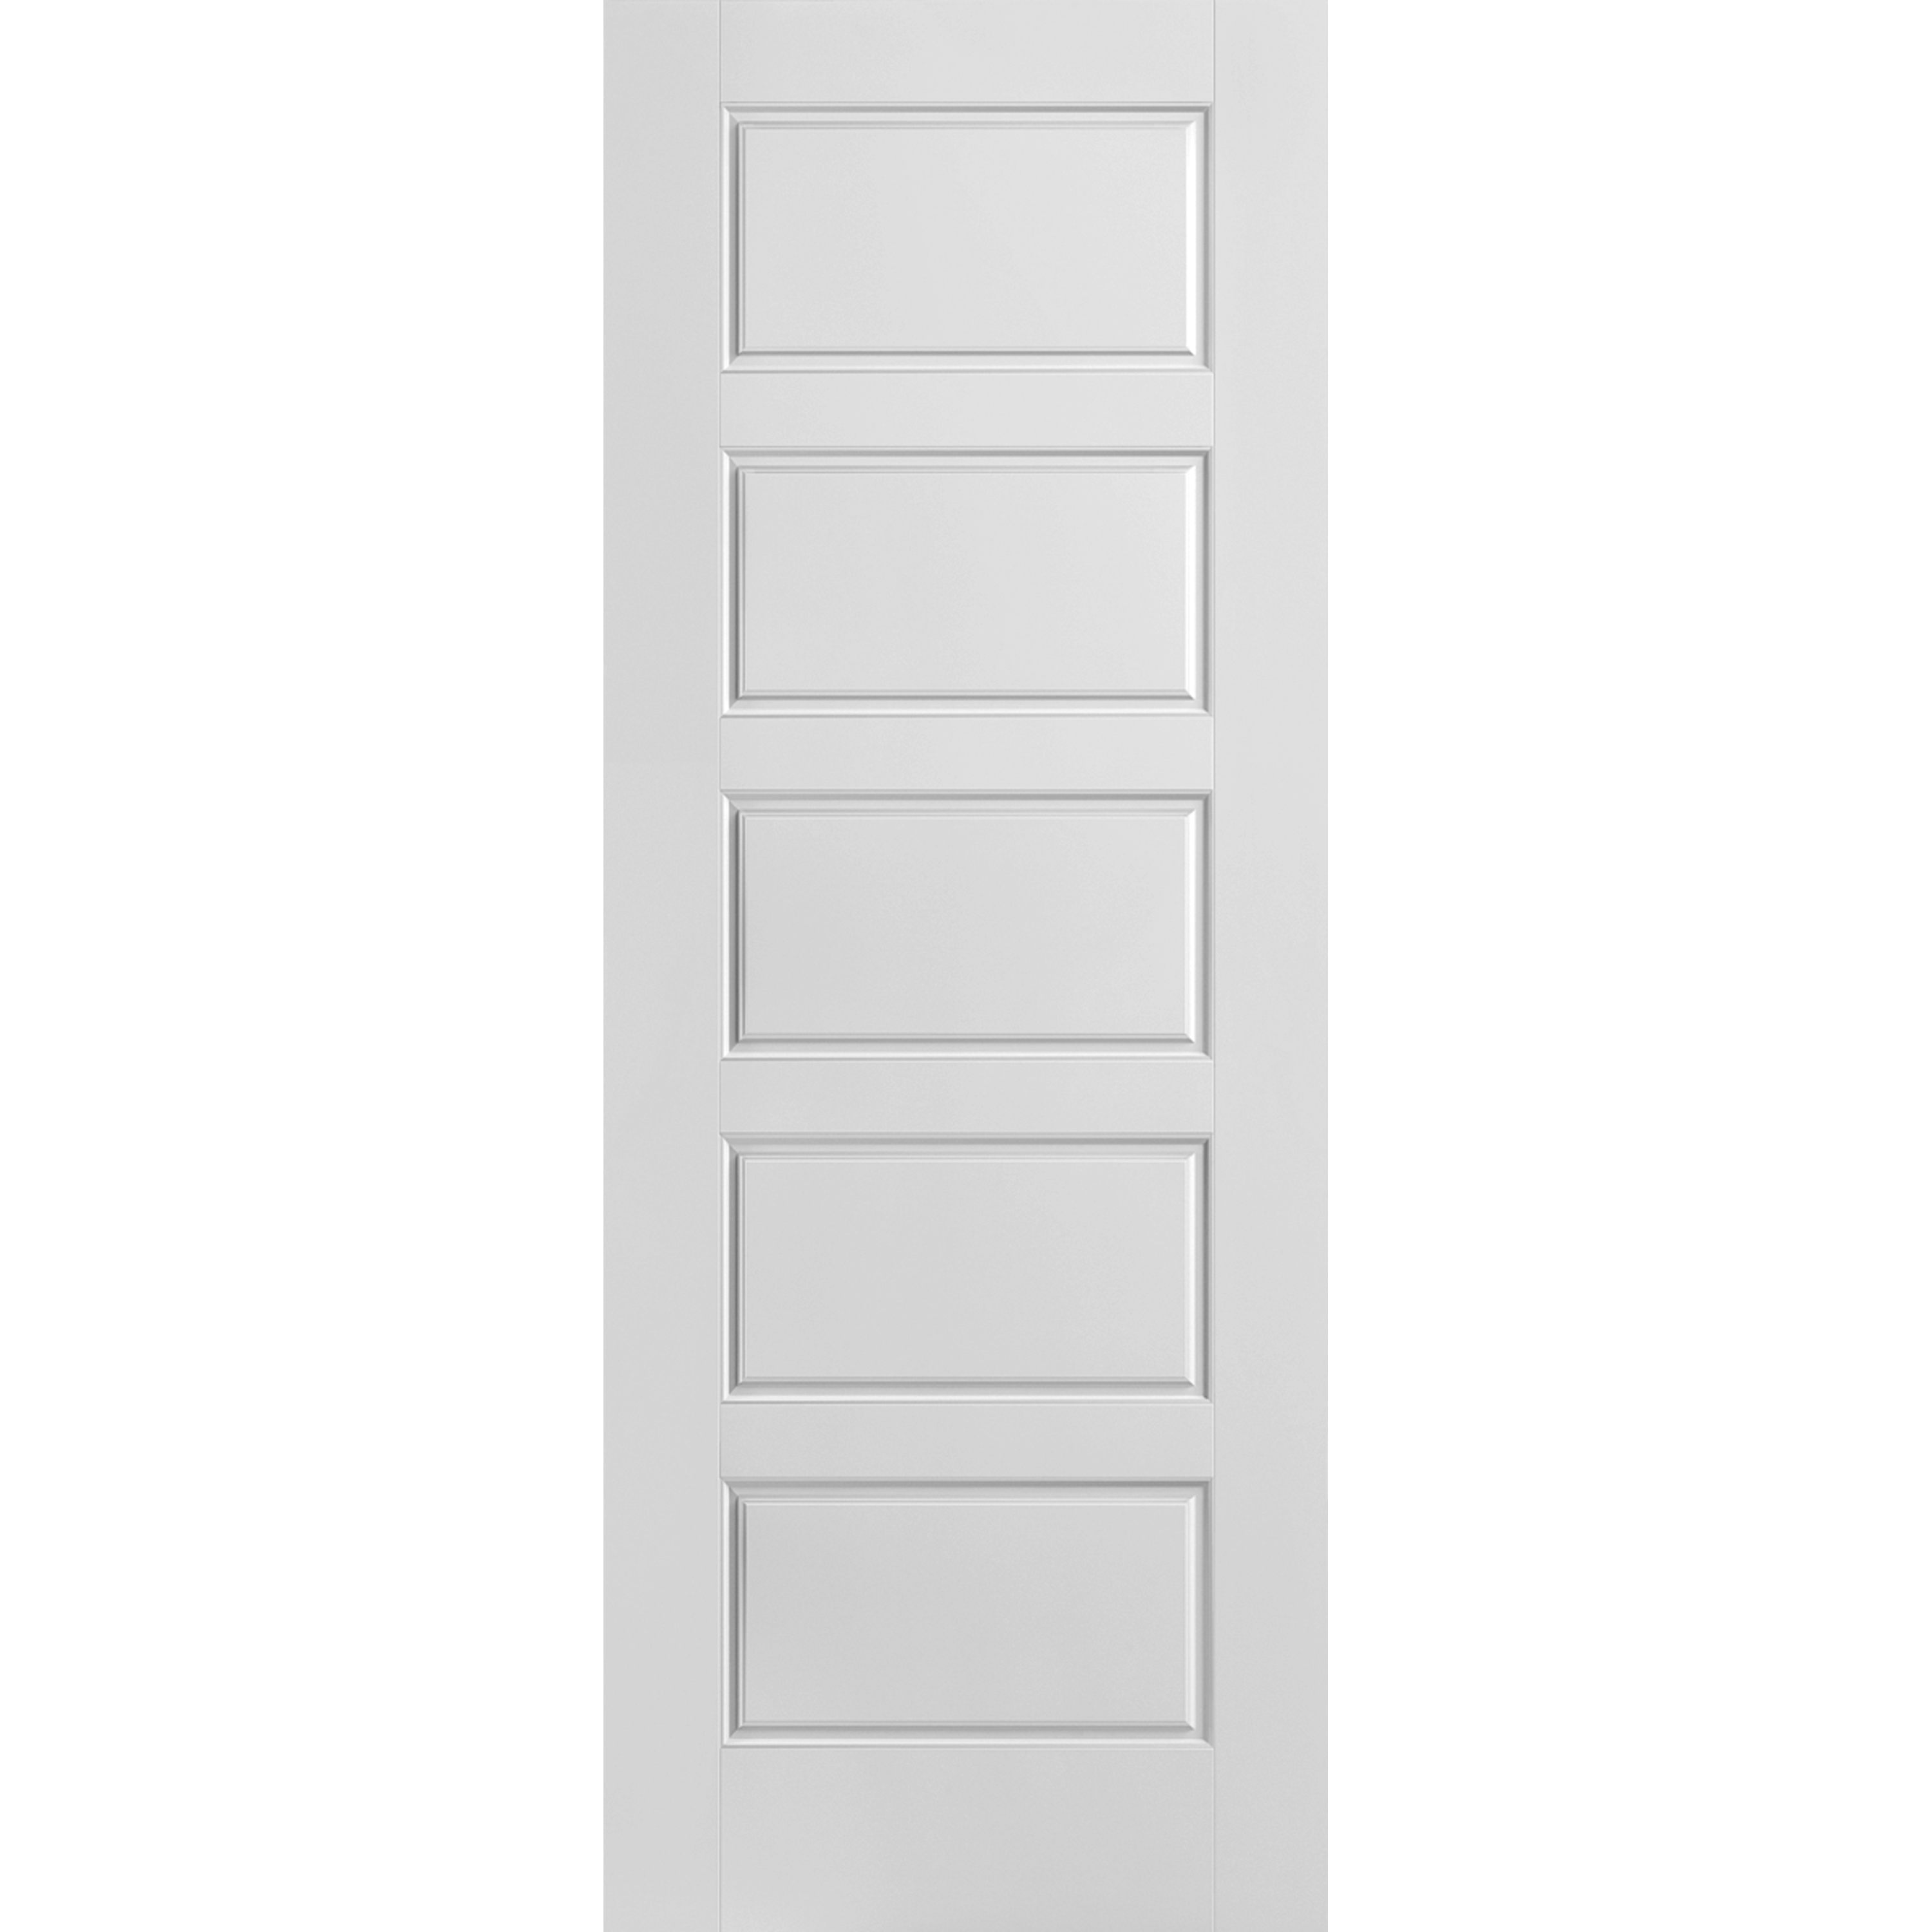 20x80 Riverside Moulded Panel Door Hollow Core